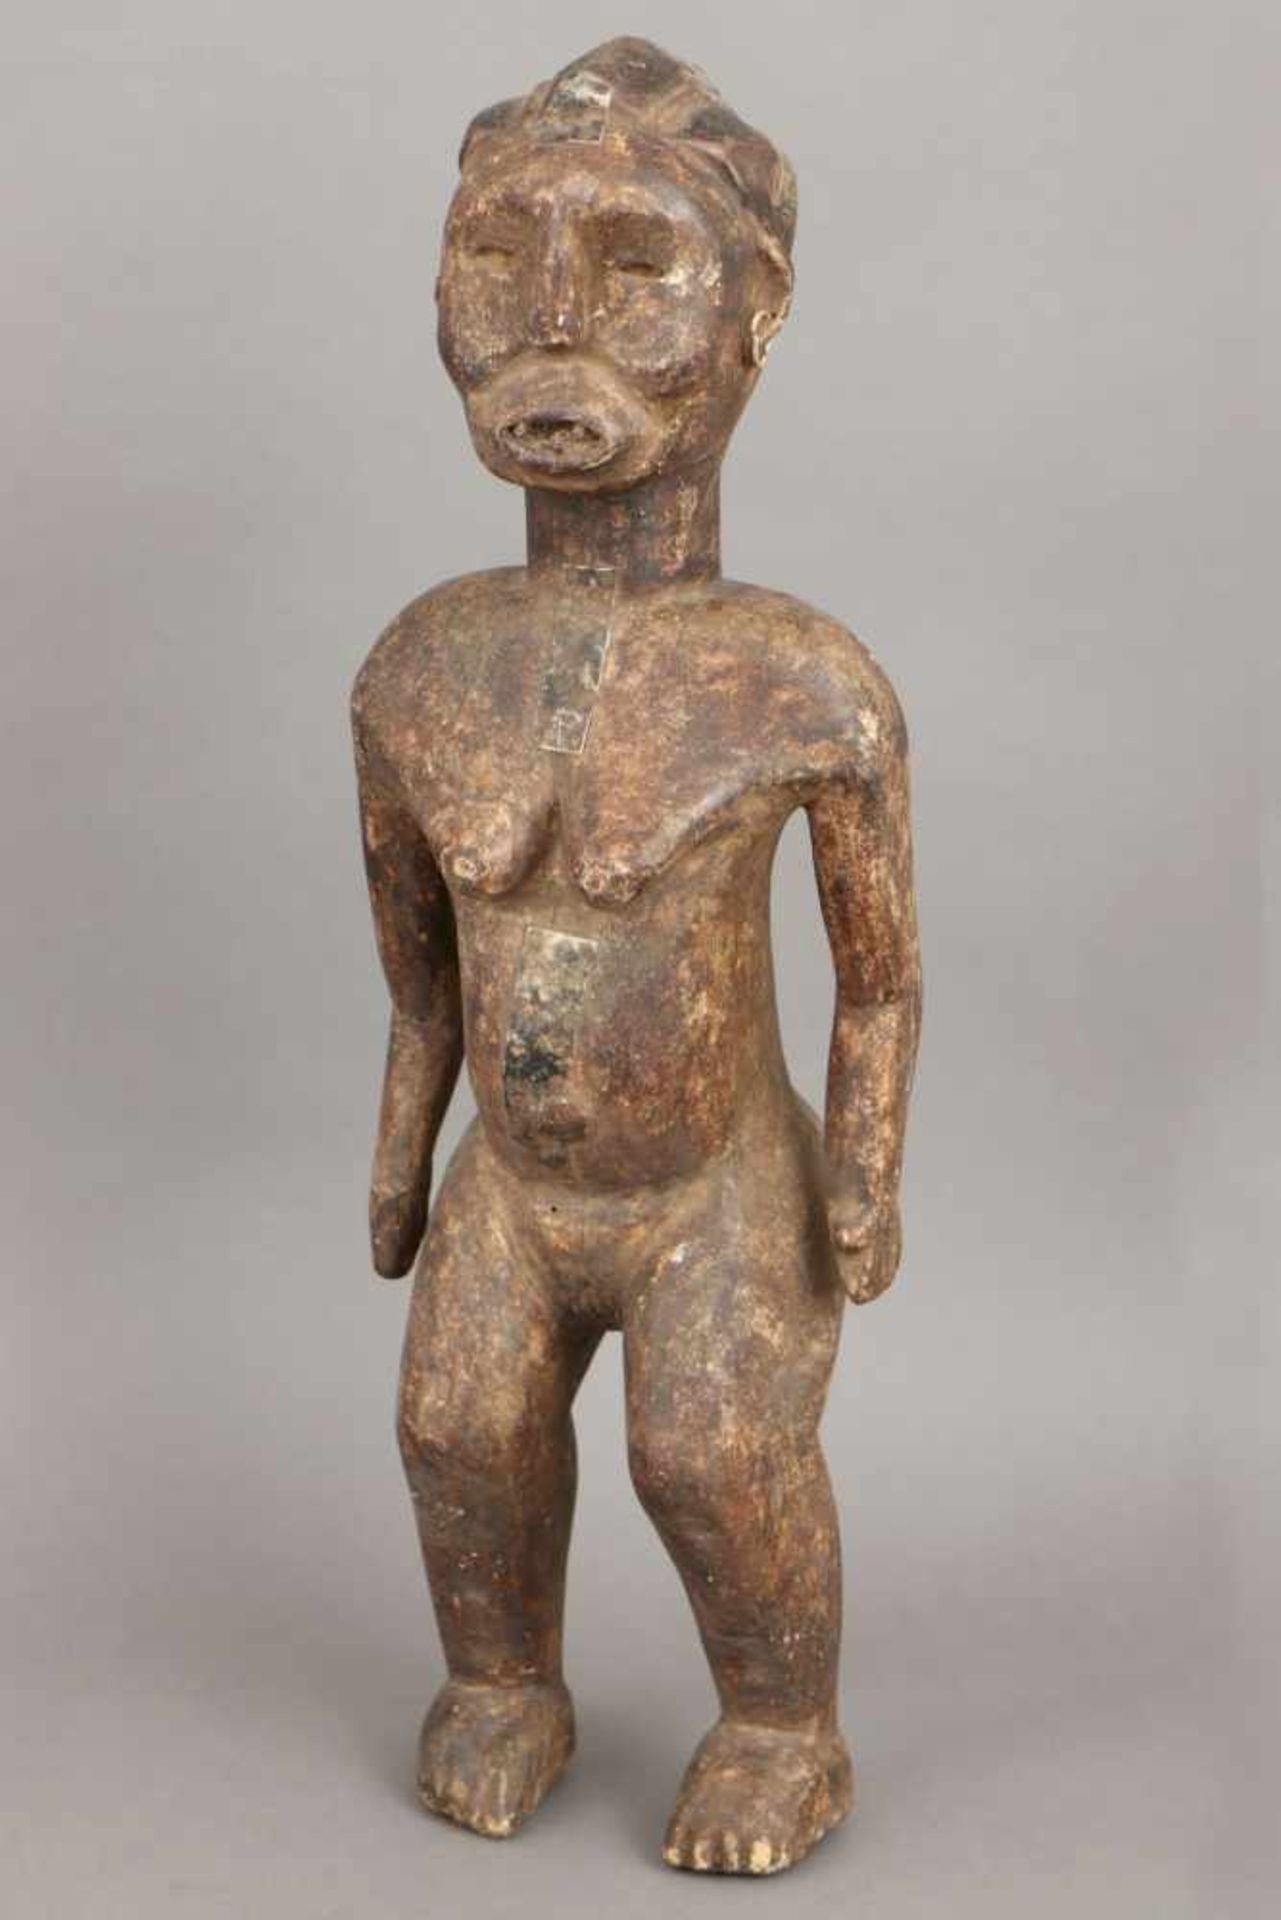 Afrikanische Ritual-/Ahnenfigur Holz, geschnitzt und dunkel patiniert, Metallbeschläge, stehende